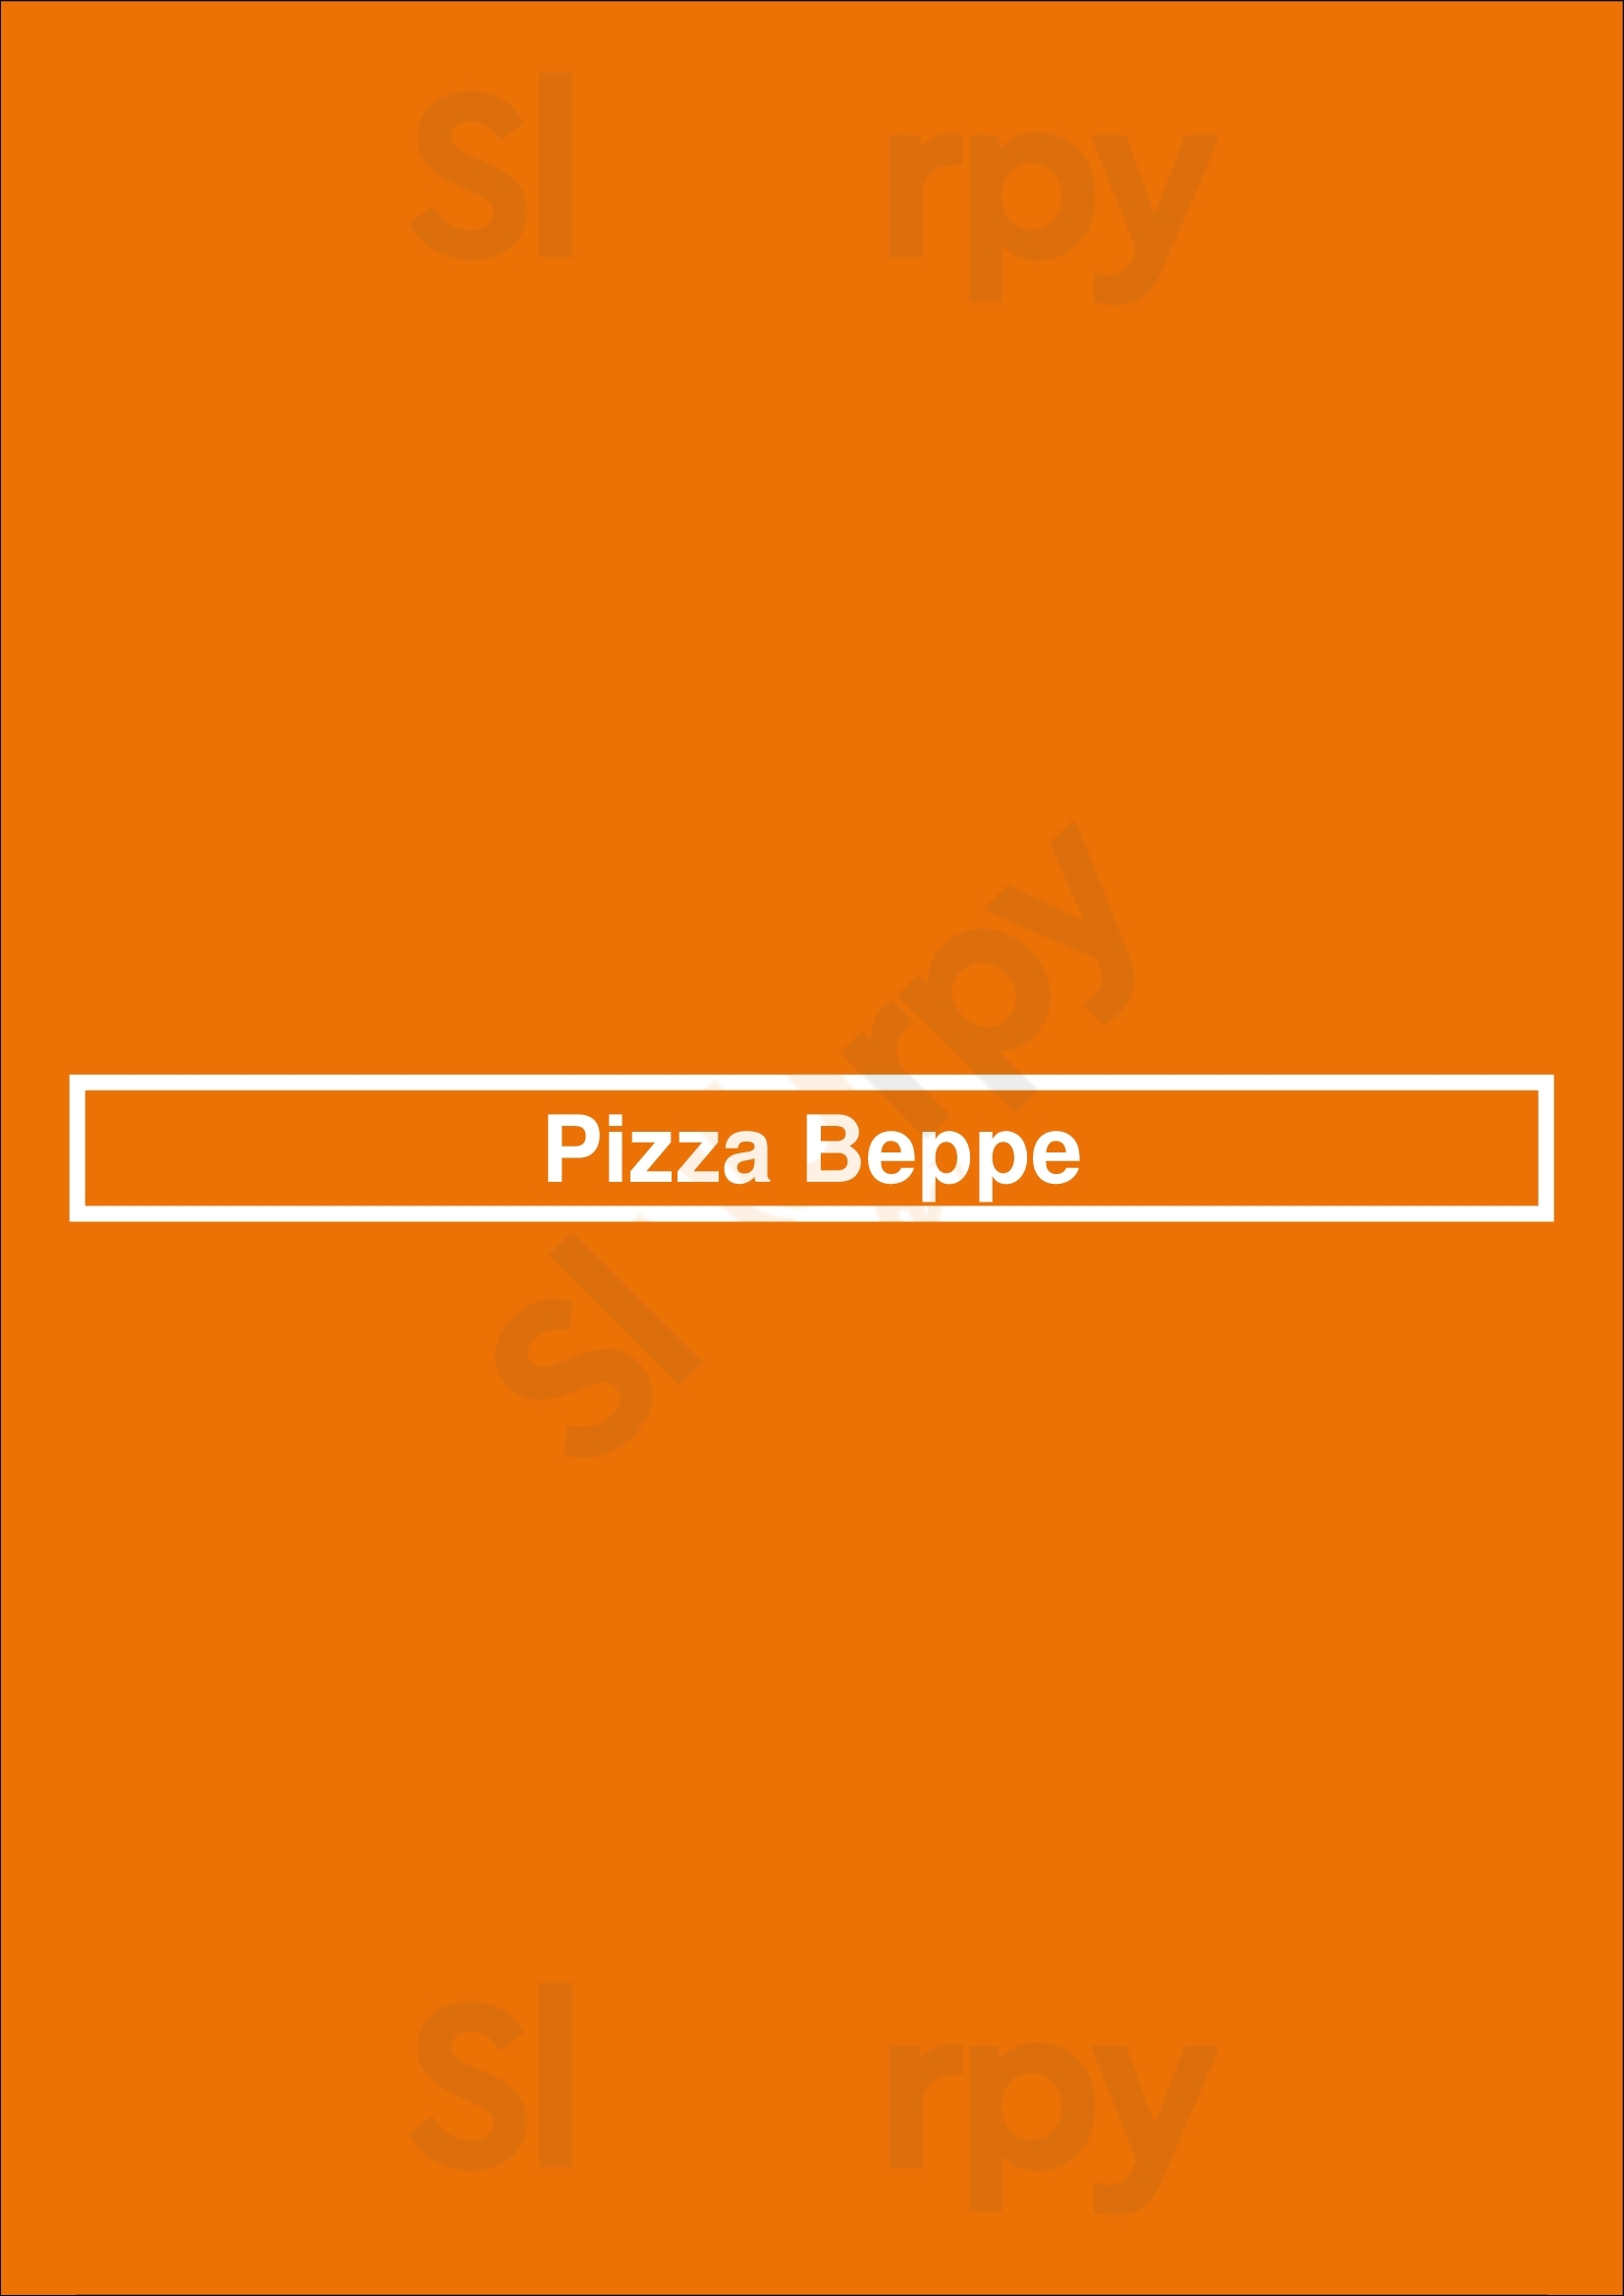 Pizza Beppe Amsterdam Menu - 1